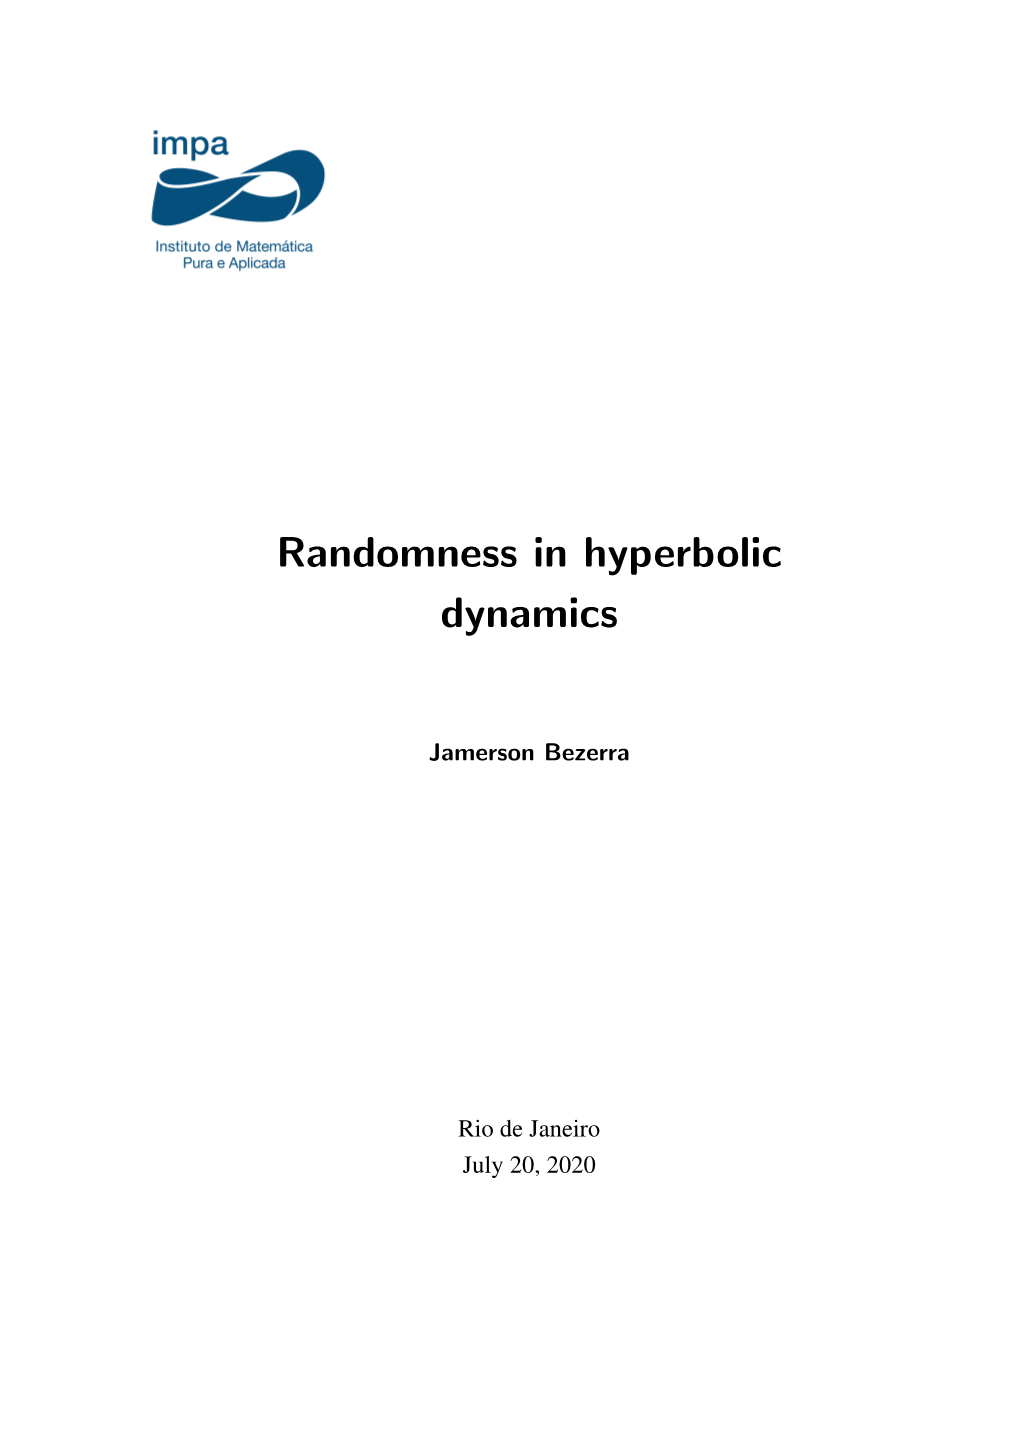 Randomness in Hyperbolic Dynamics